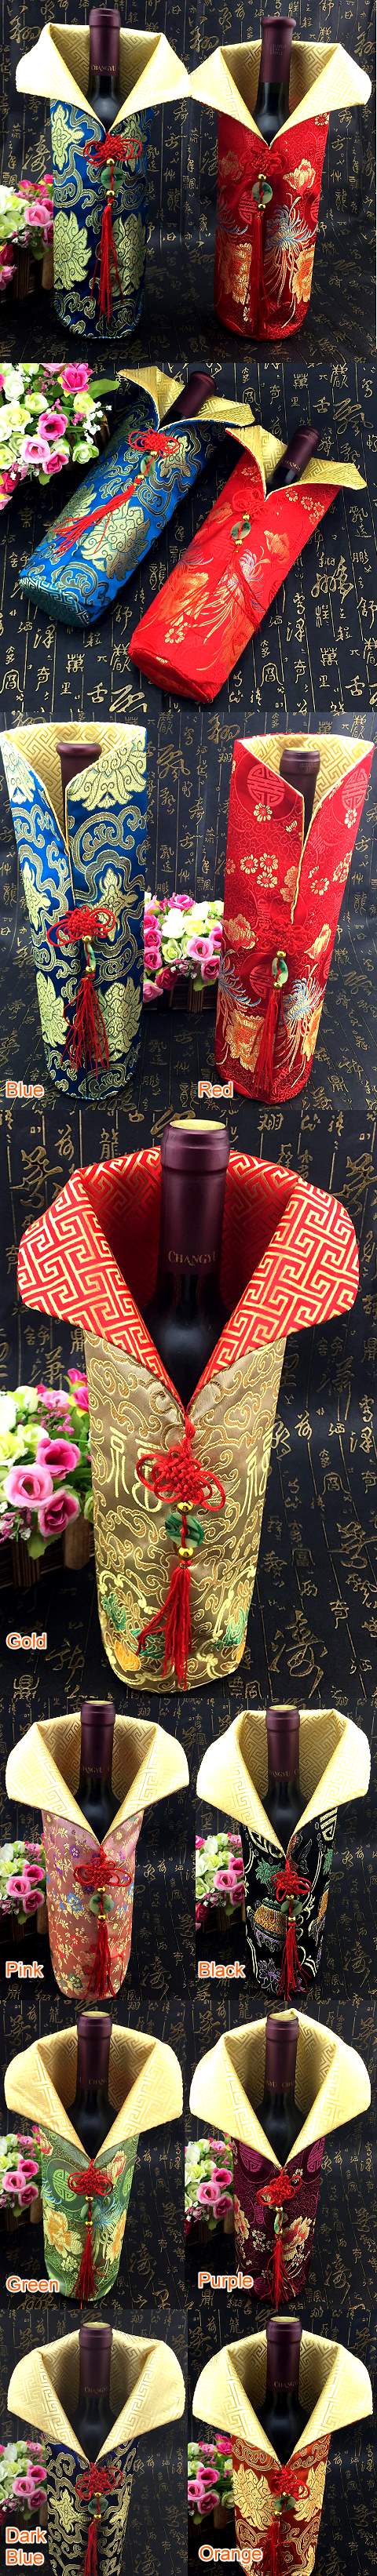 中國風情刺繡流蘇酒瓶套